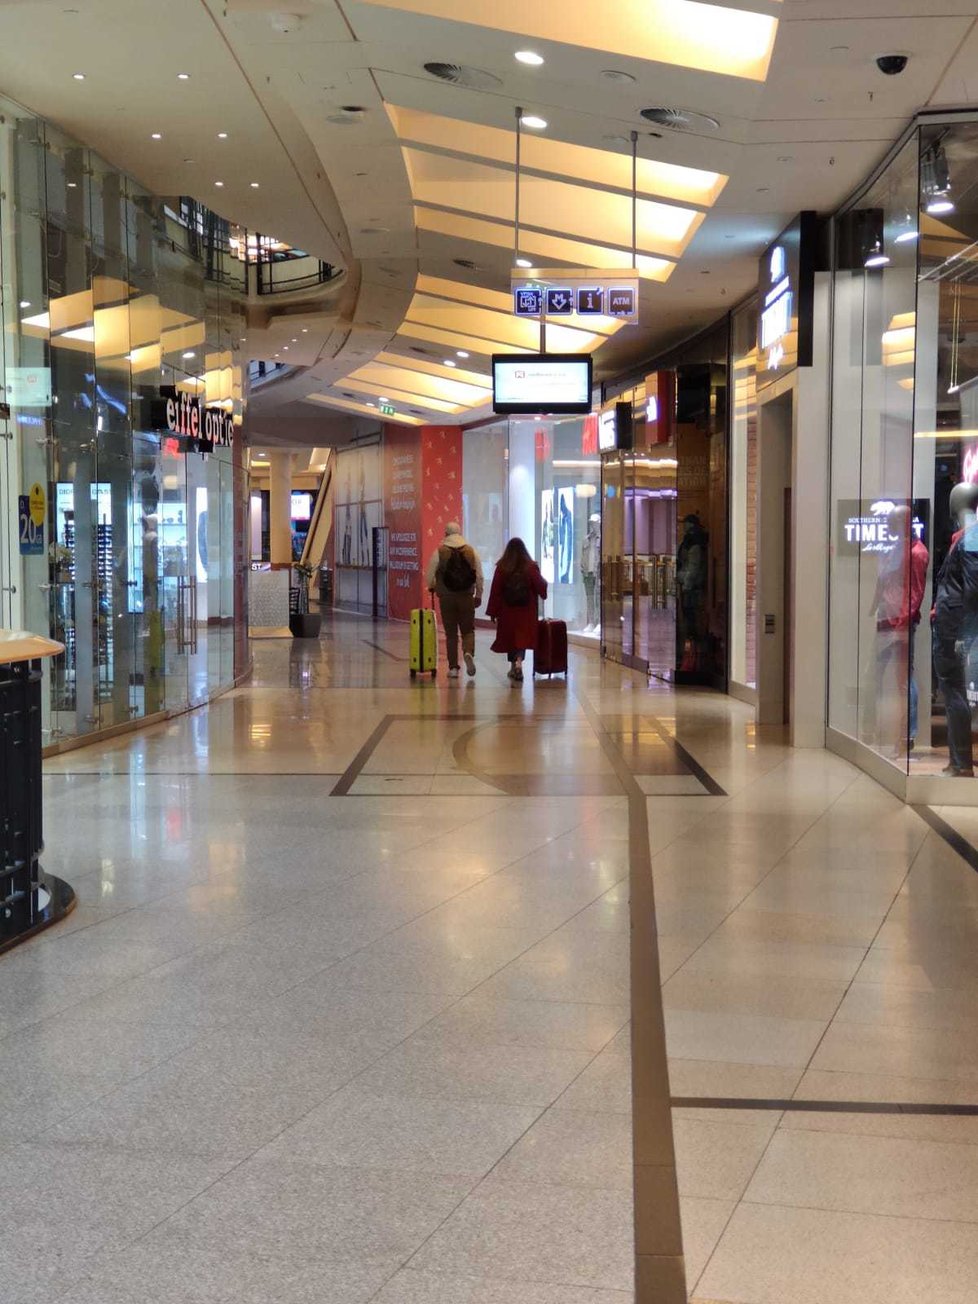 Obchodní centrum Palladium v centru Prahy zeje prázdnotou. Většina obchodů je zavřených.